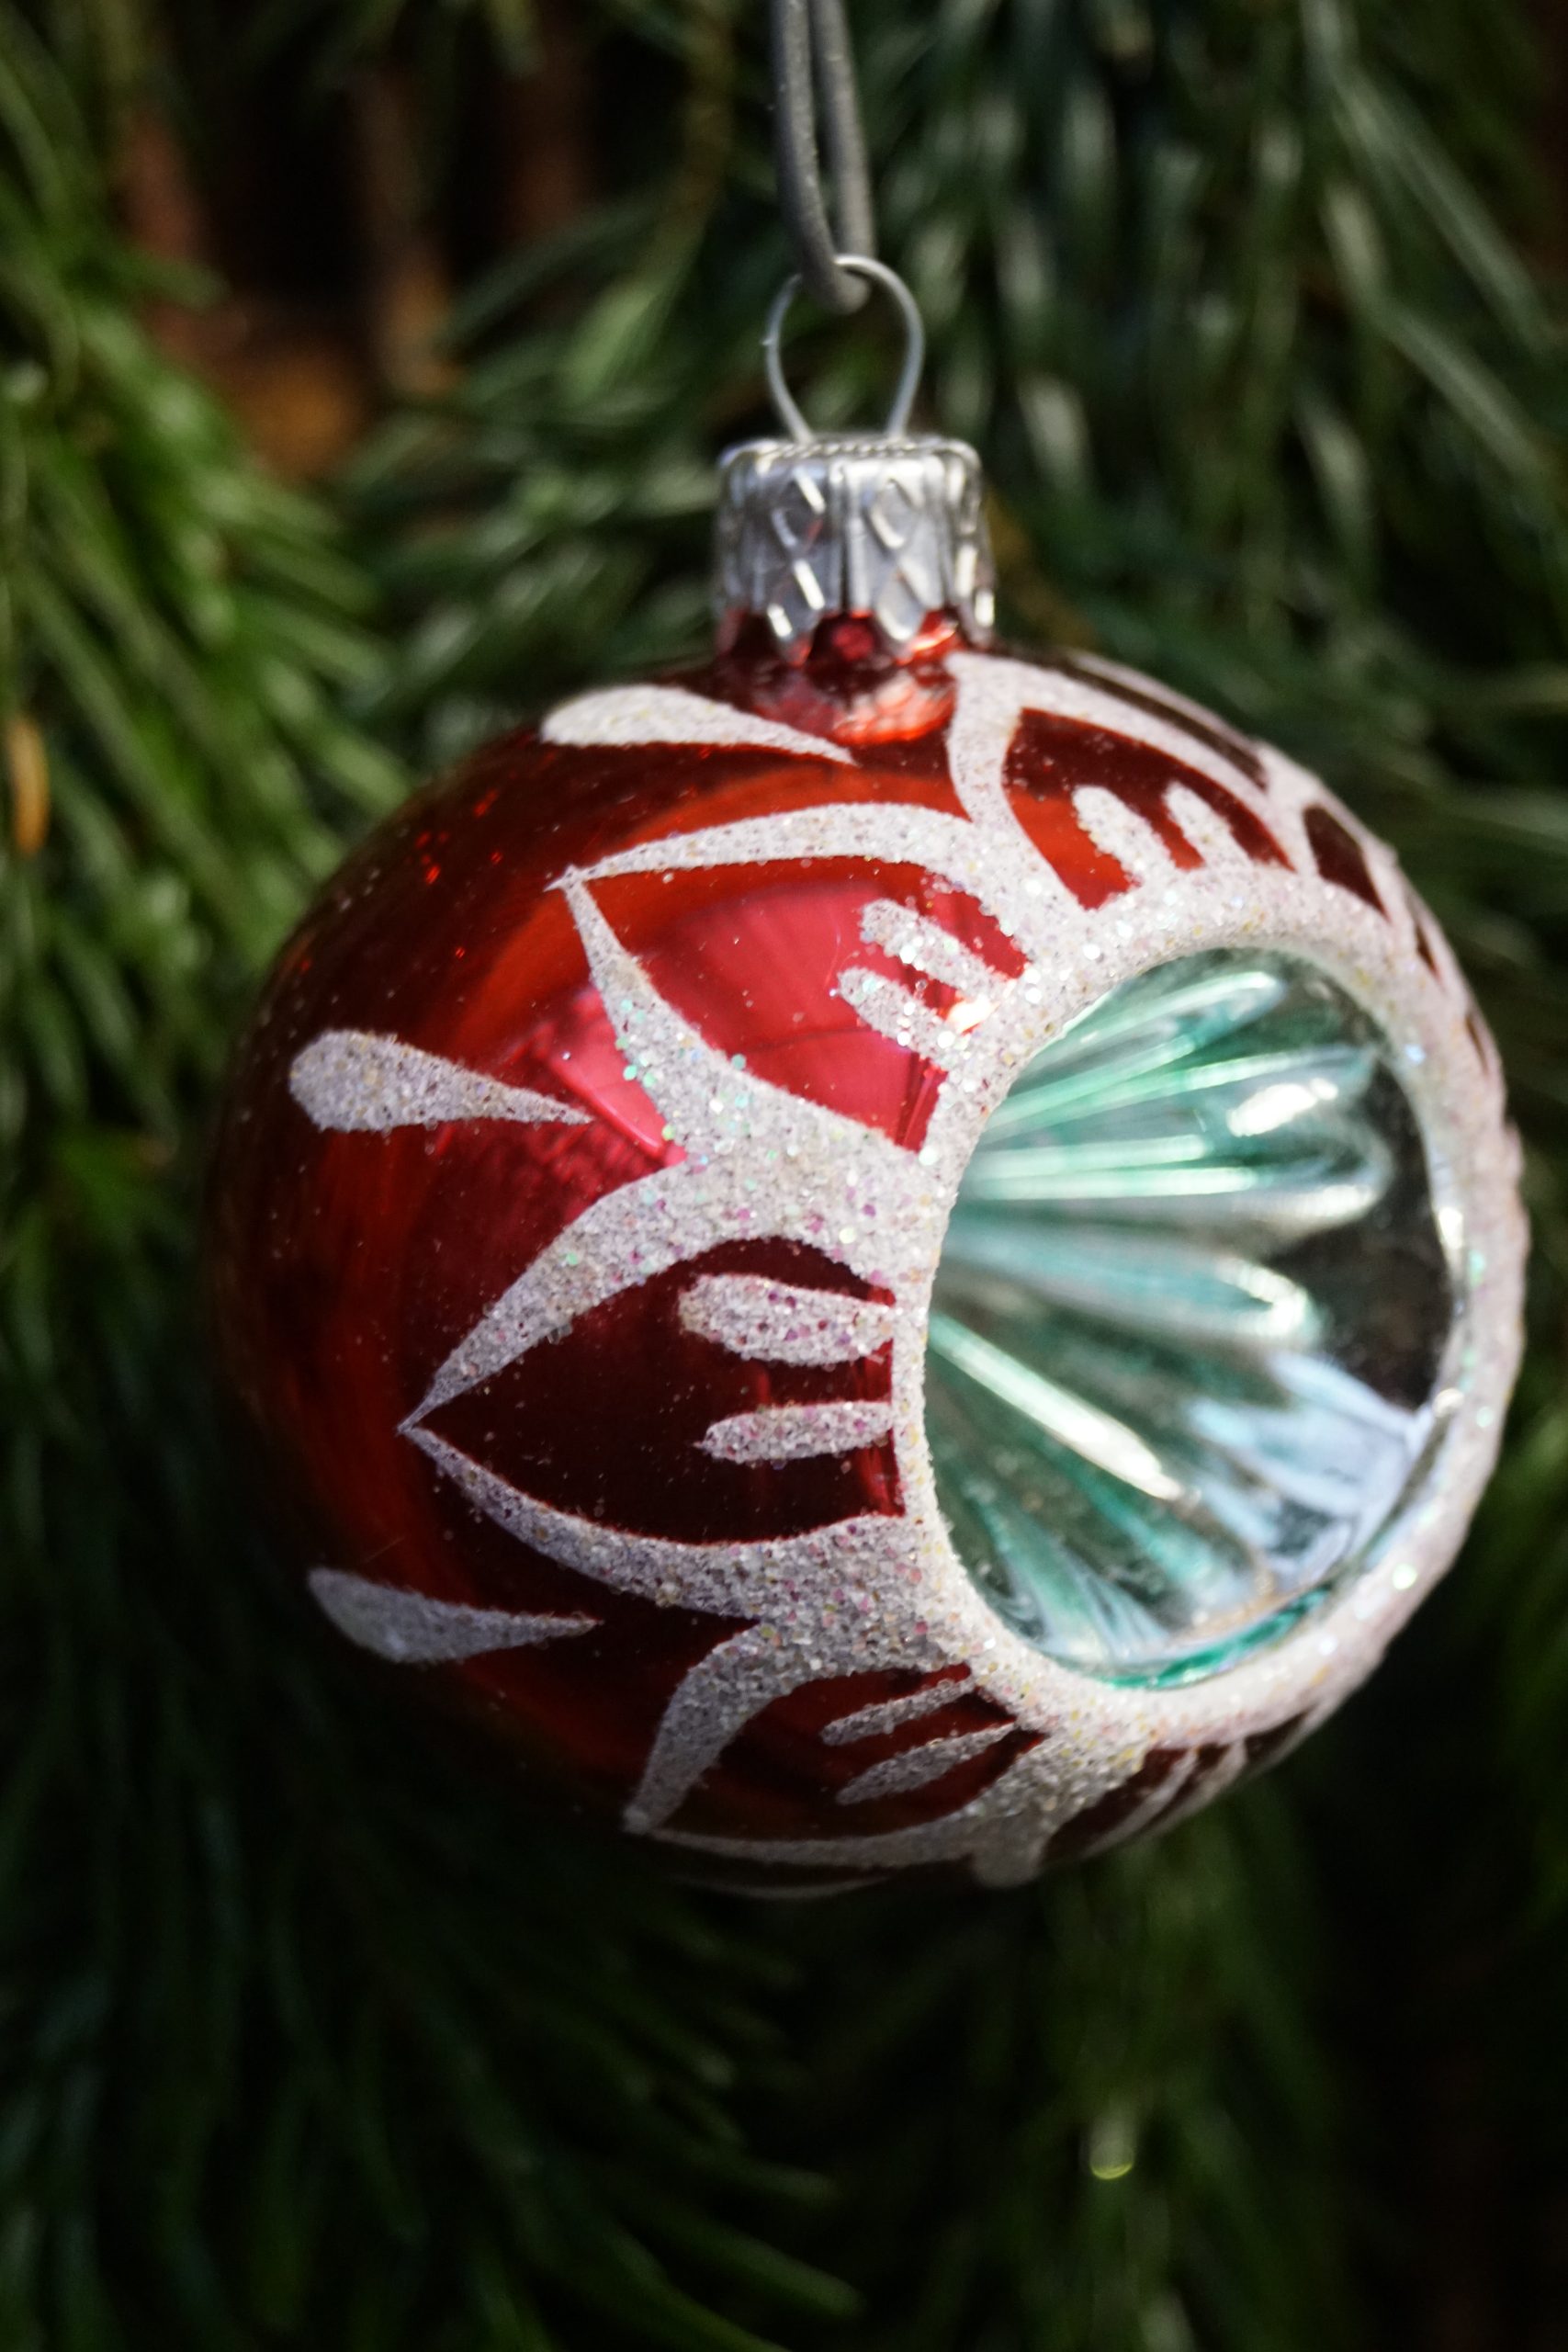 Julekugle 7 cm, Rød med blårød Spejl, dekoreret med sne